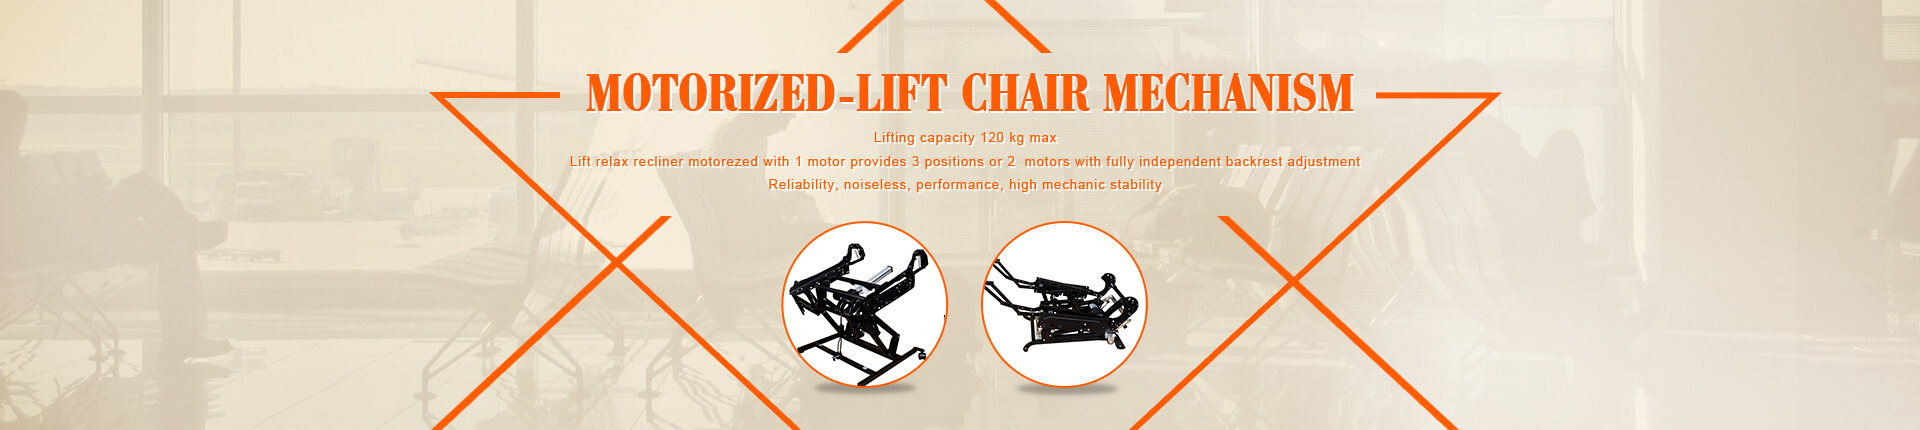 Motorized-Lift Chair Mechanism Series